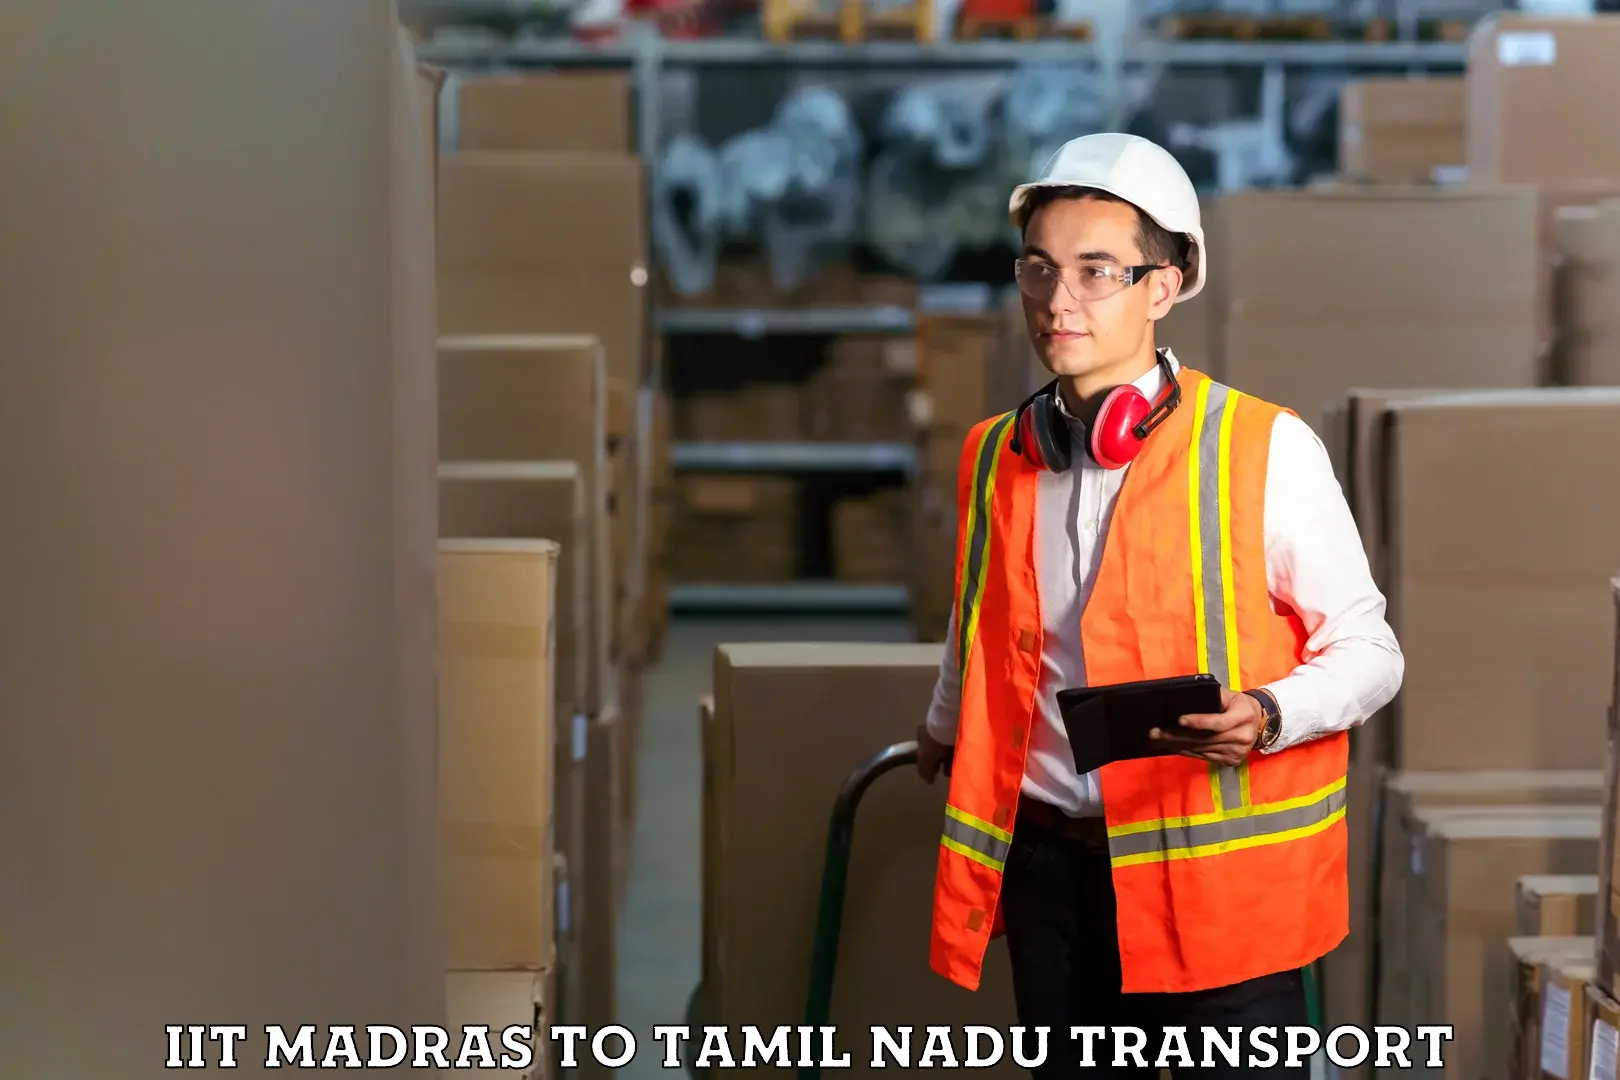 Online transport service IIT Madras to Perunali